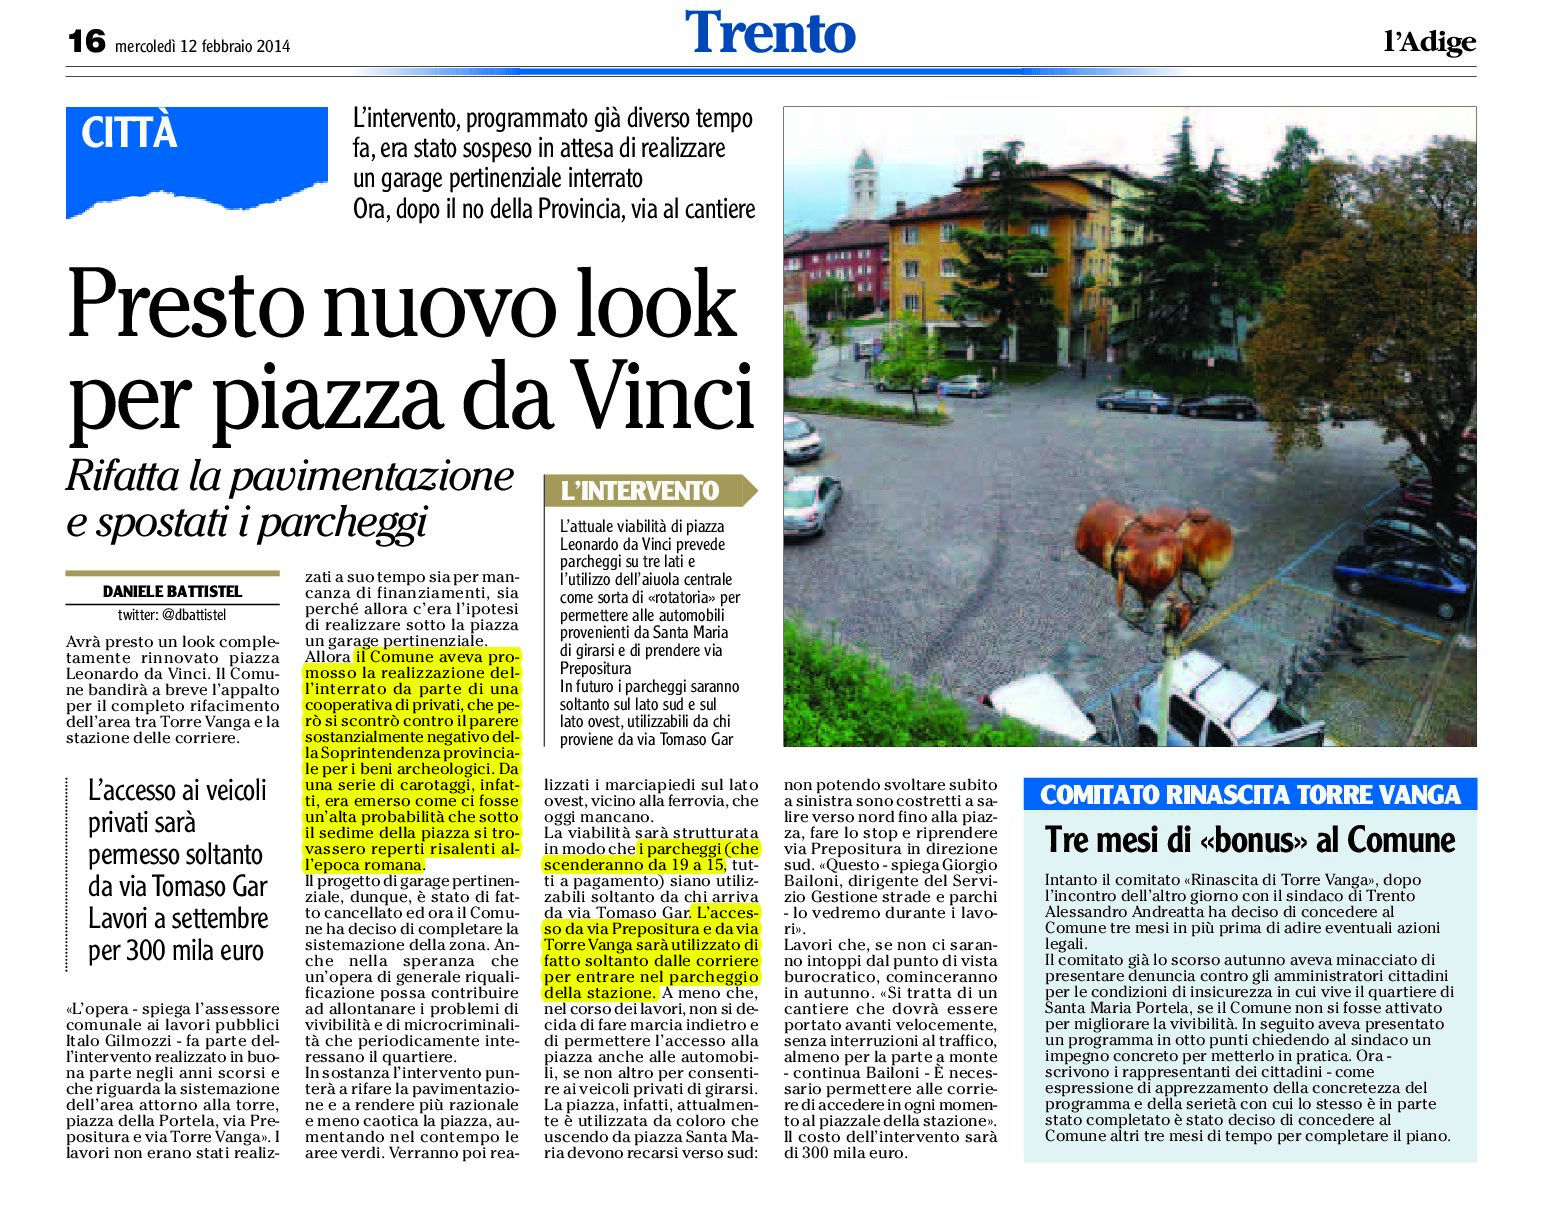 Trento: presto nuovo look per piazza da Vinci